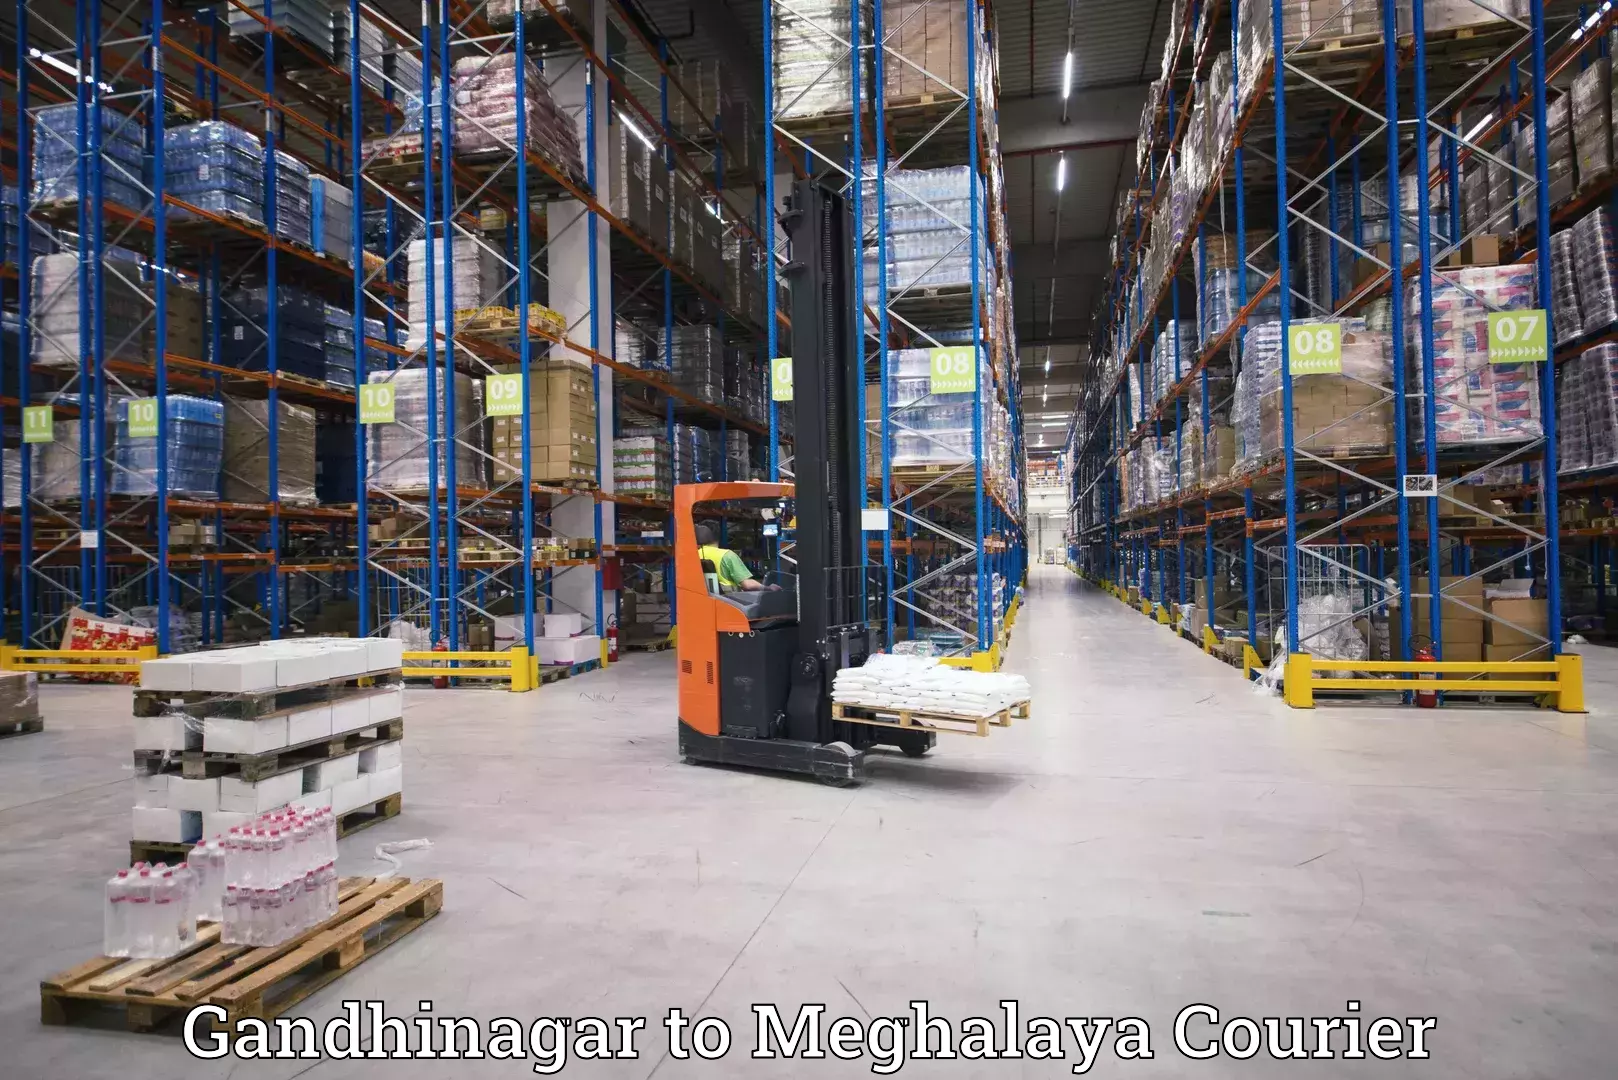 Comprehensive shipping network Gandhinagar to Williamnagar